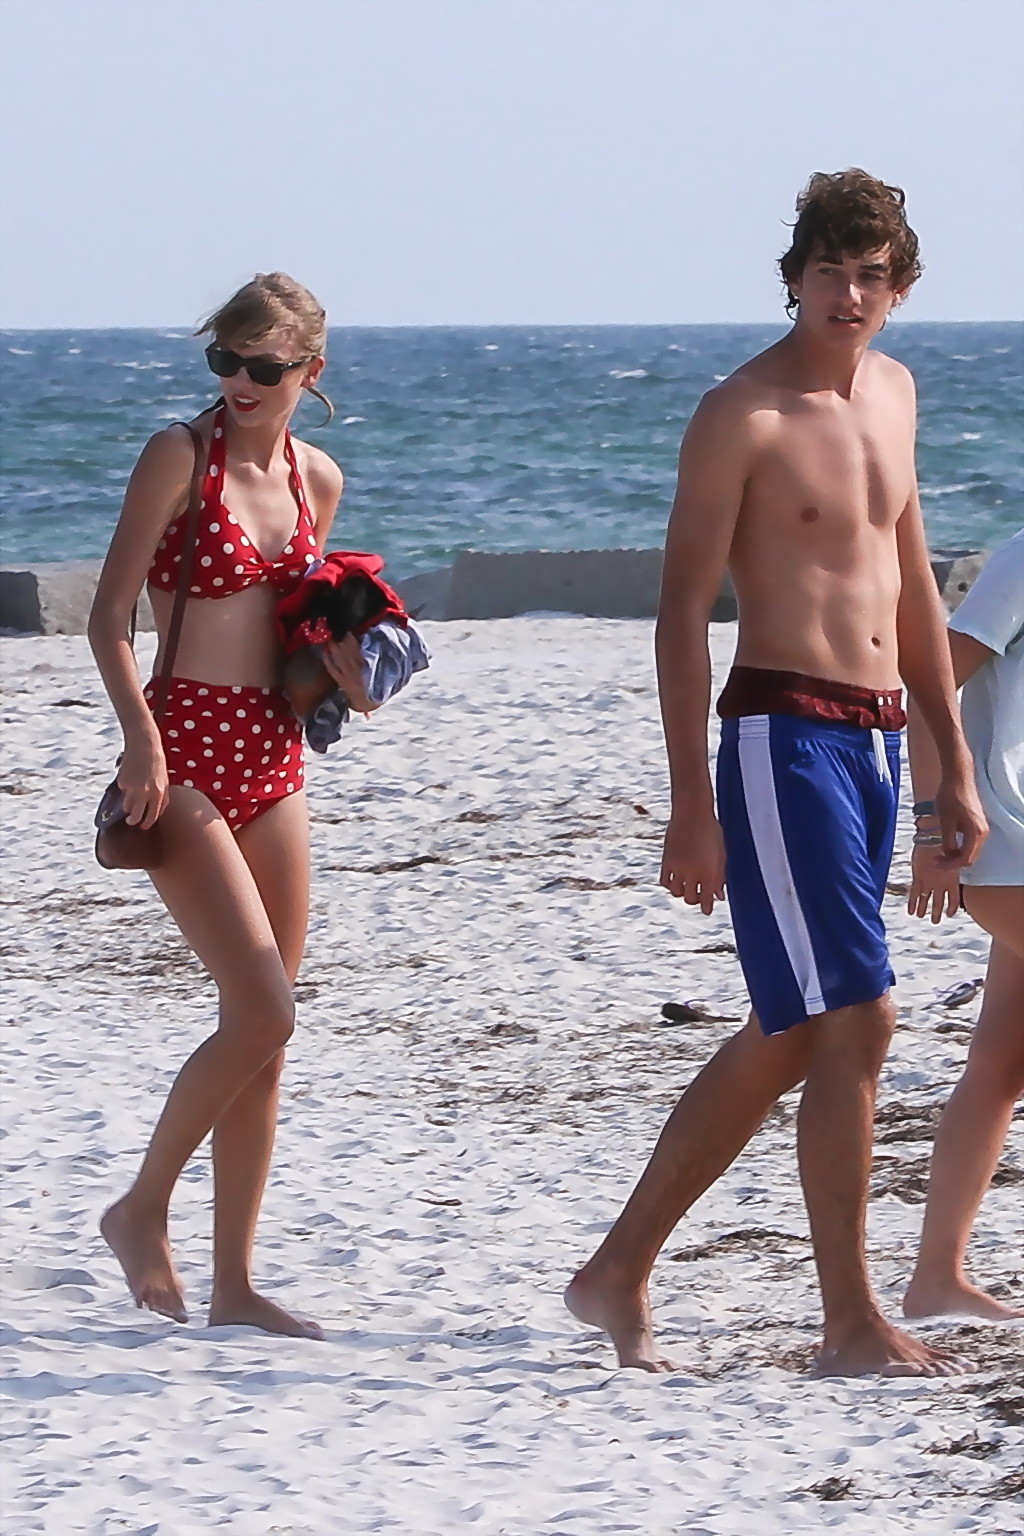 Taylor Swift shows her hot body wearing polka dot bikini at a beach in Cape Cod #75254283